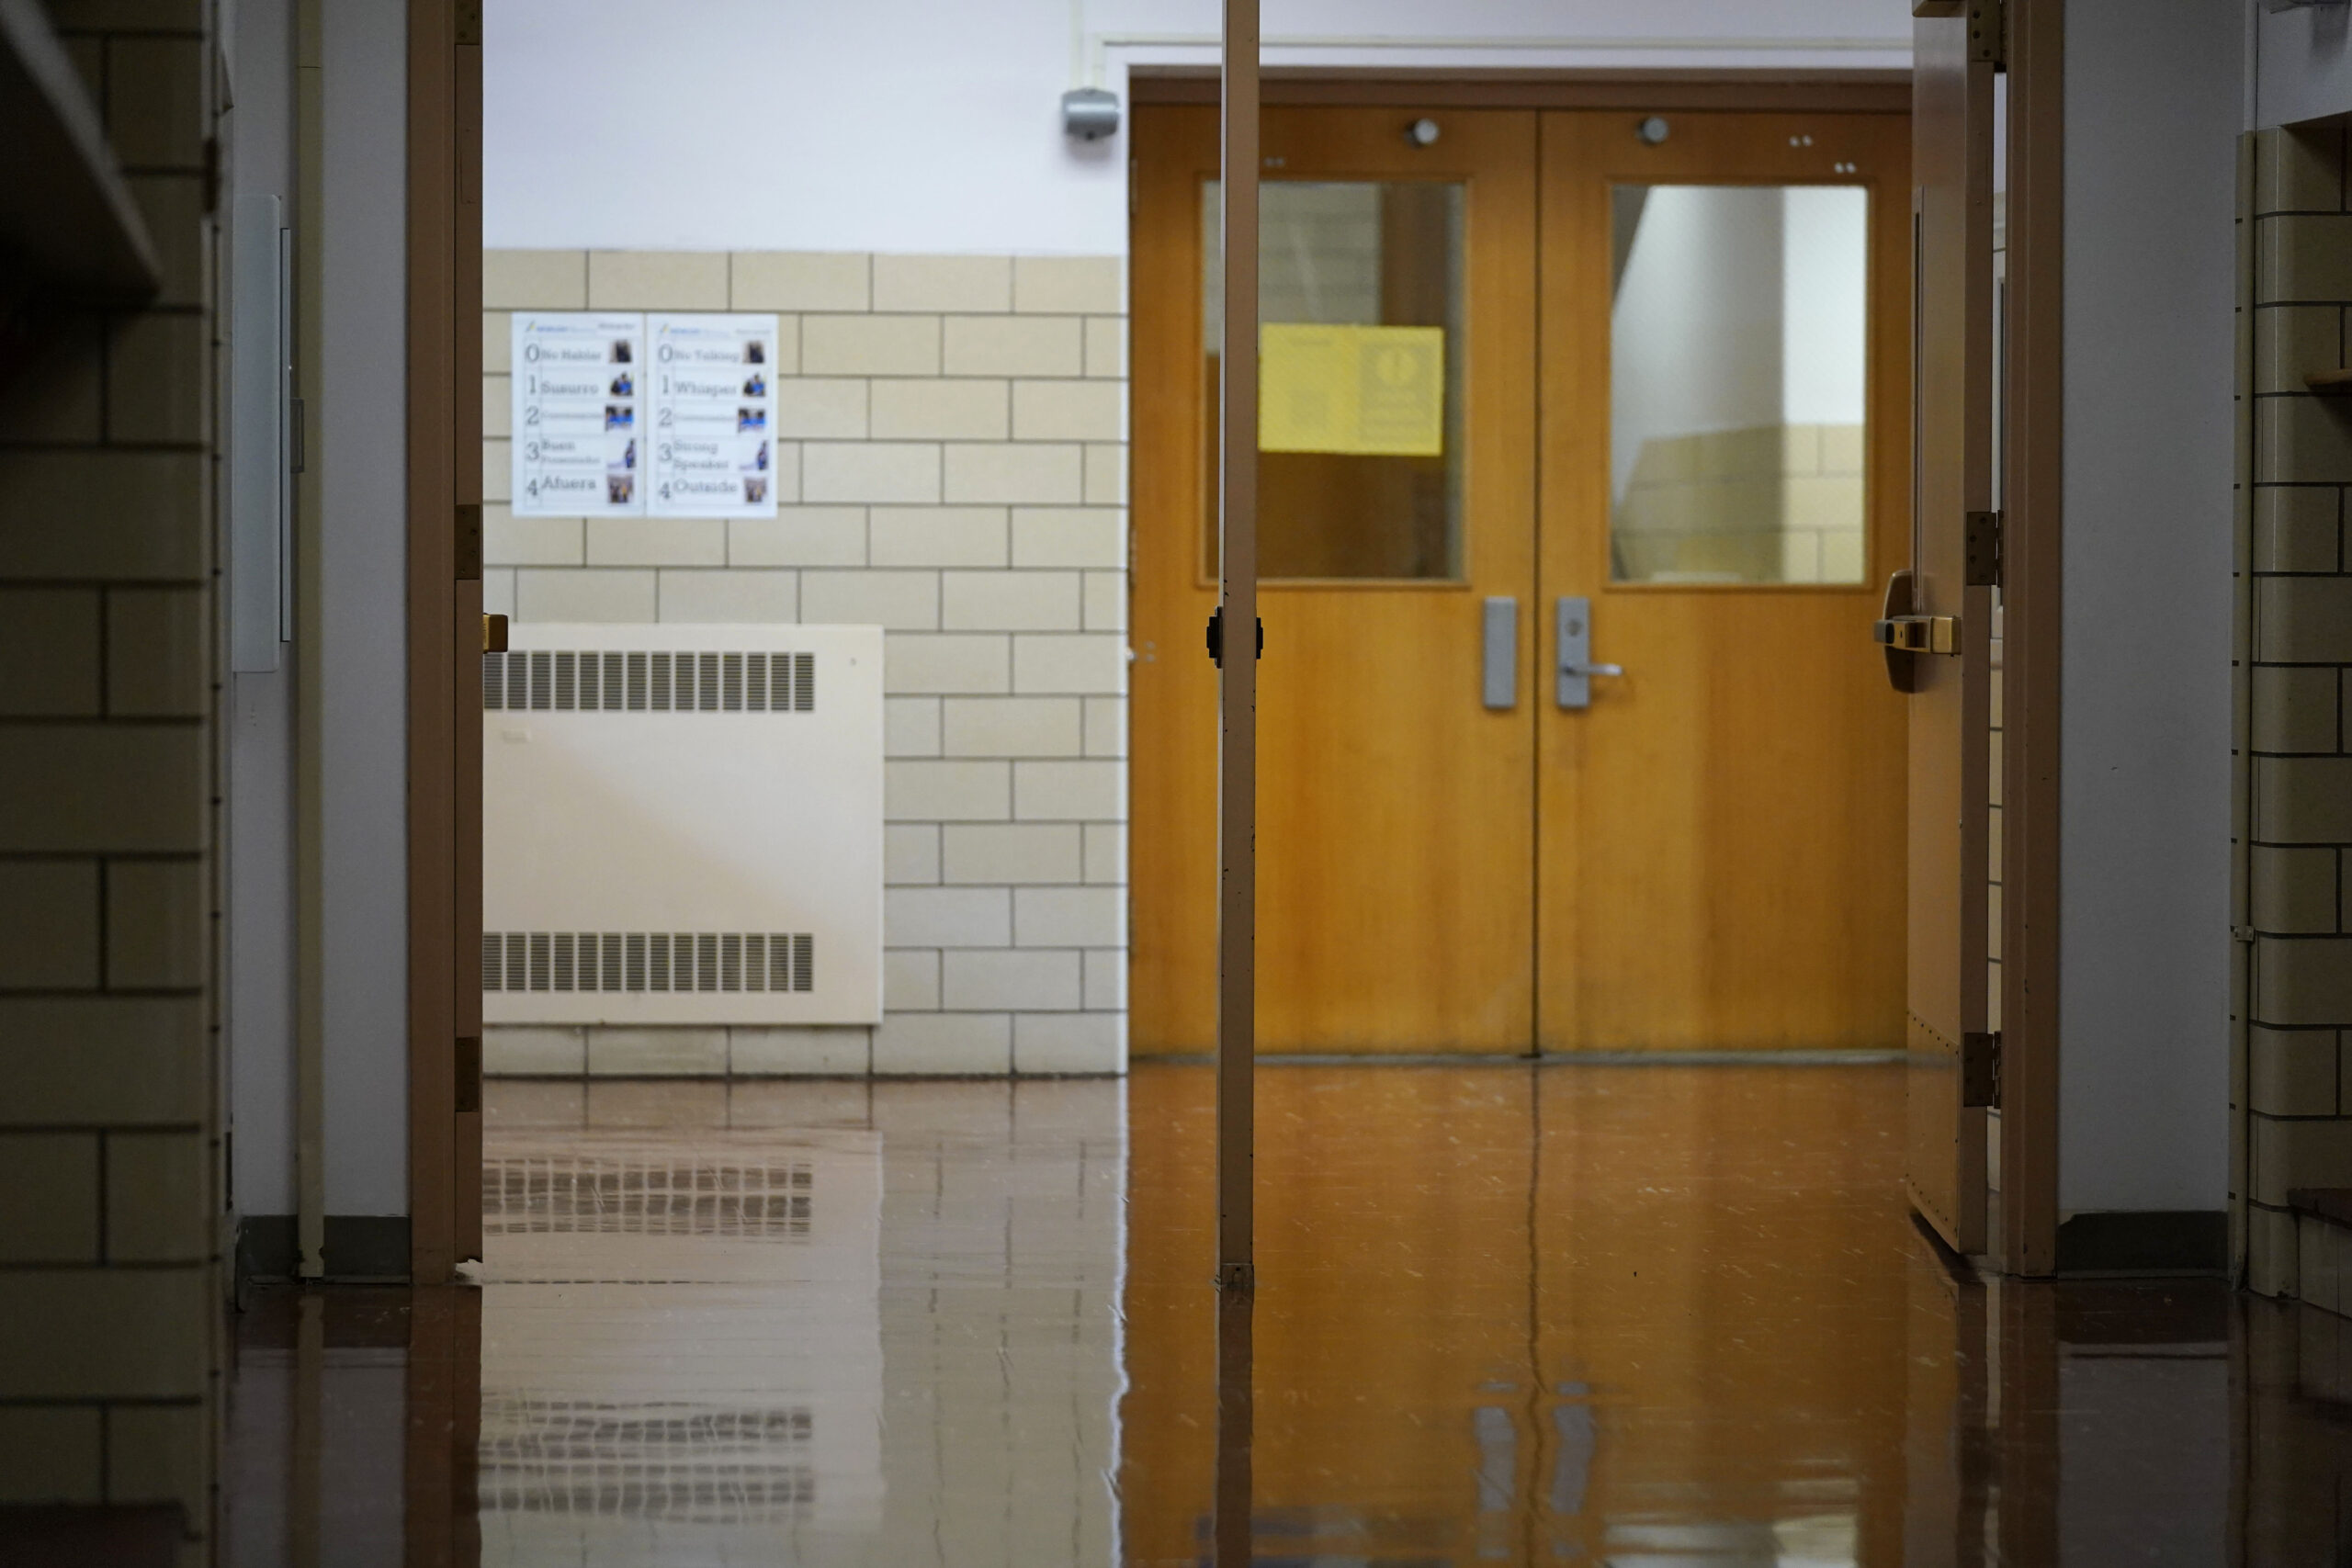 Despite fears, teacher retirements were down last year in Wisconsin